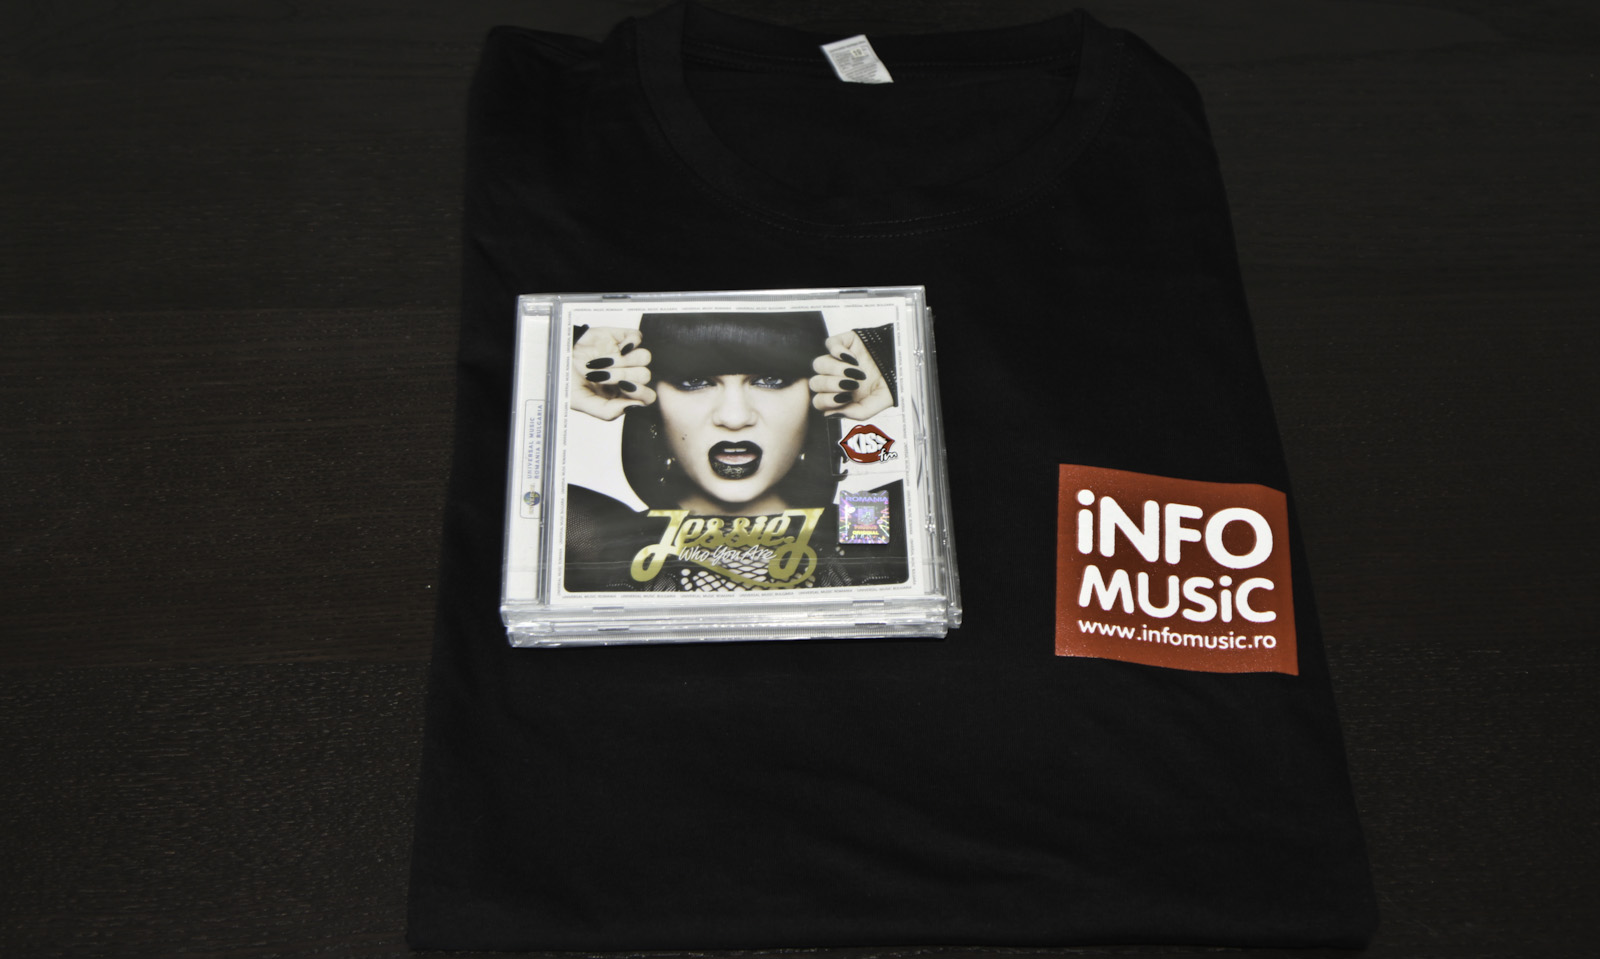 Unul dintre cele 3 premii: un tricou Info Music și un CD Jessie J